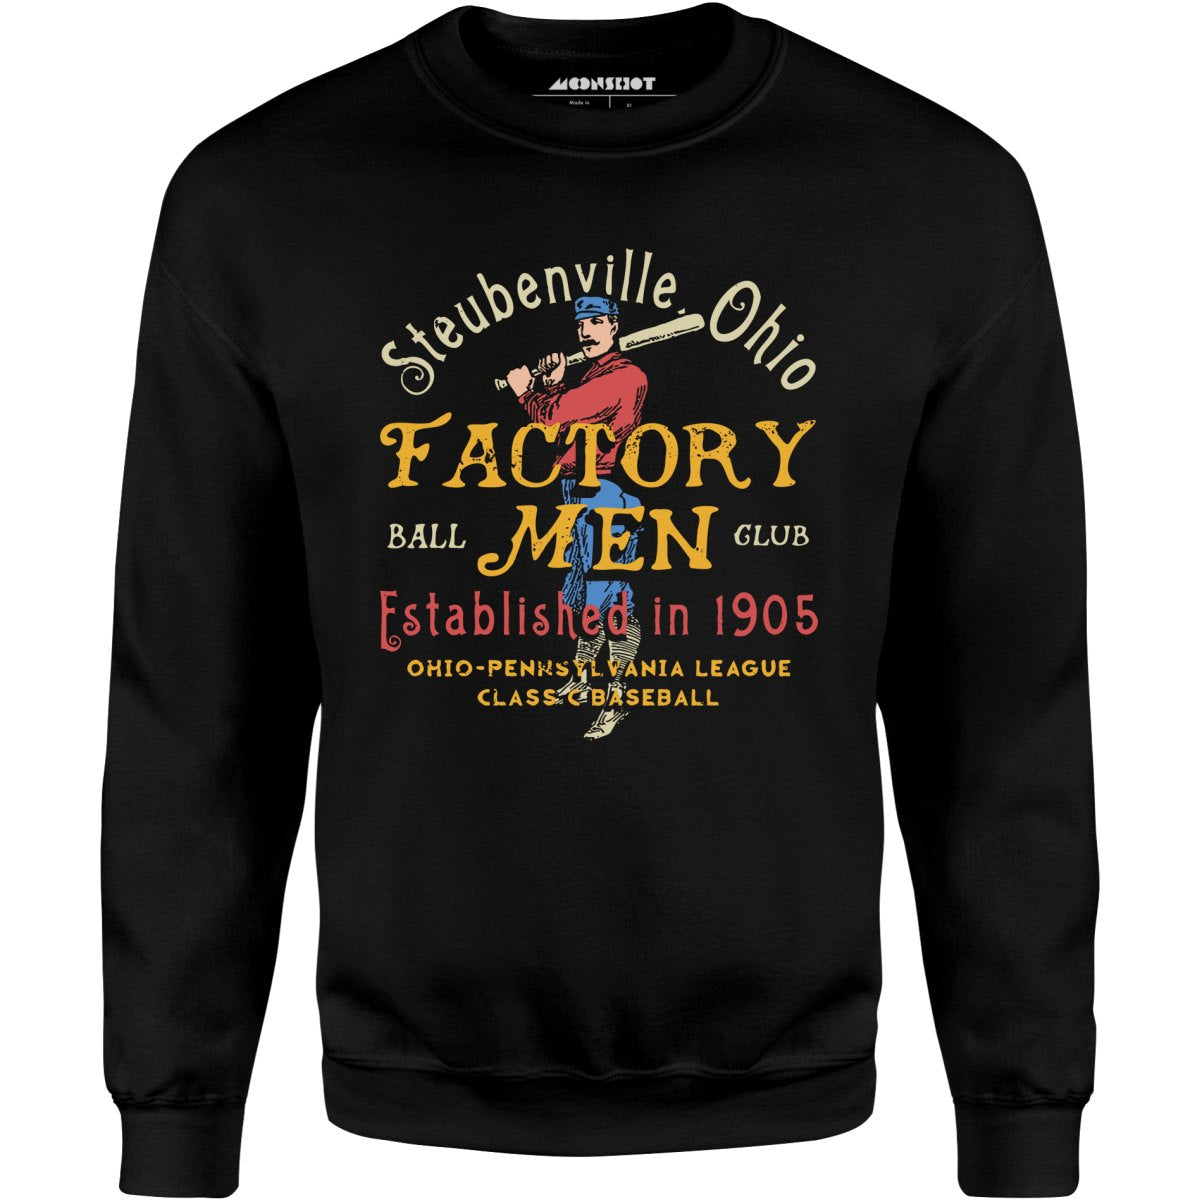 Steubenville Factory Men - Ohio - Vintage Defunct Baseball Teams - Unisex Sweatshirt